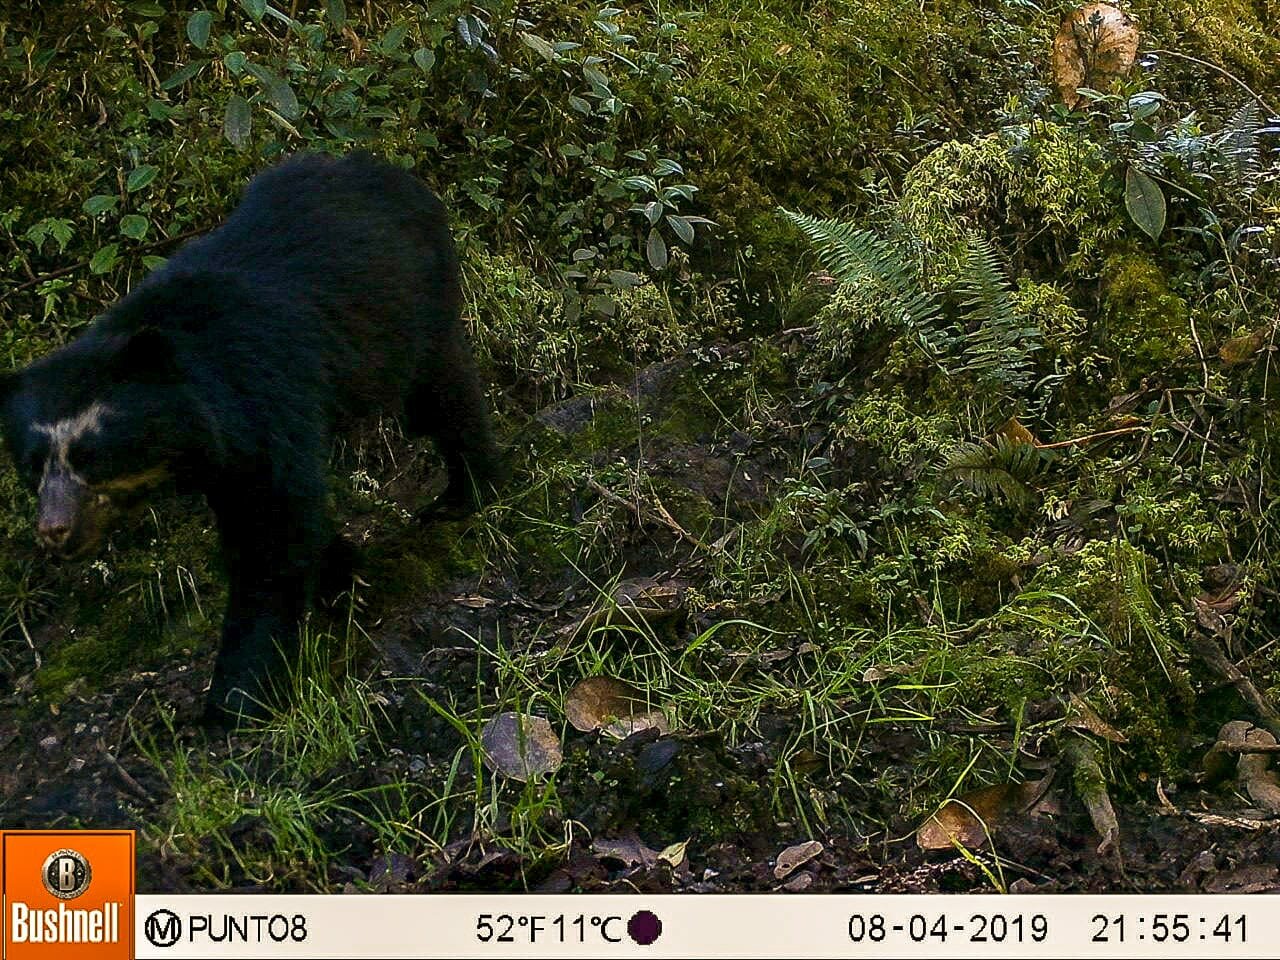 Cientistas tentam resolver conflito entre moradores de vilarejo e ursos-de-óculos no Peru